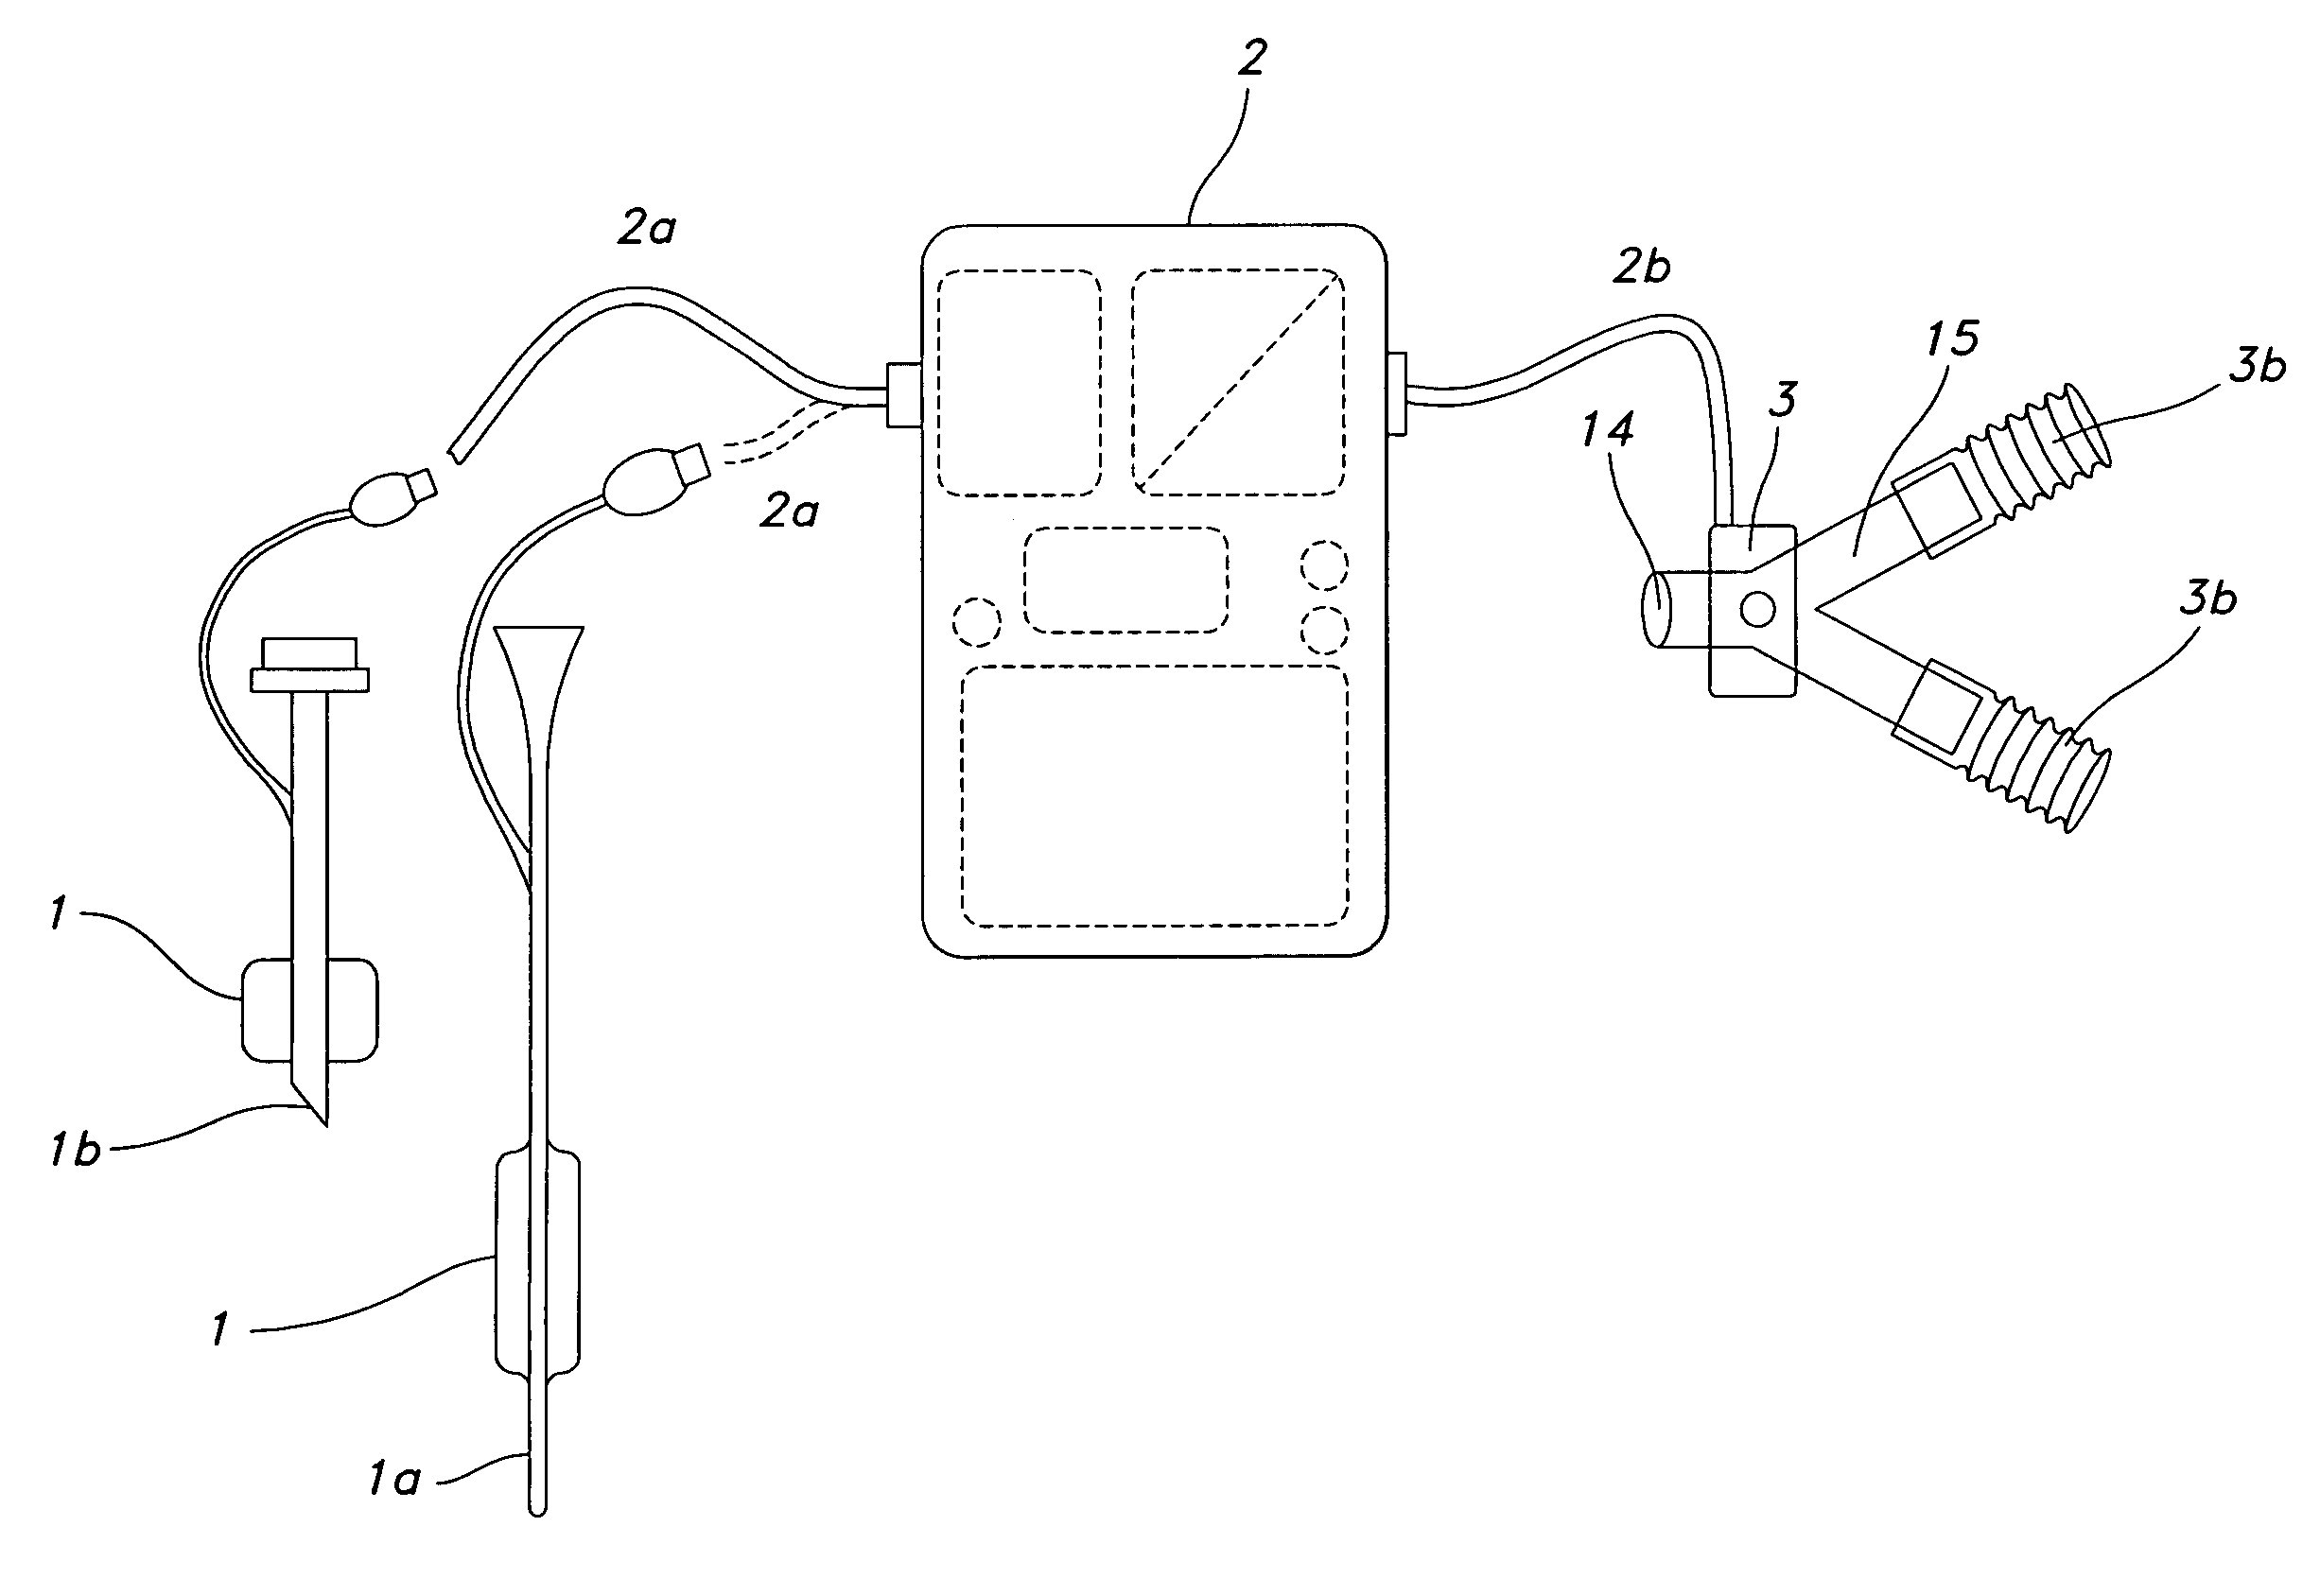 Method of triggering a ventilator